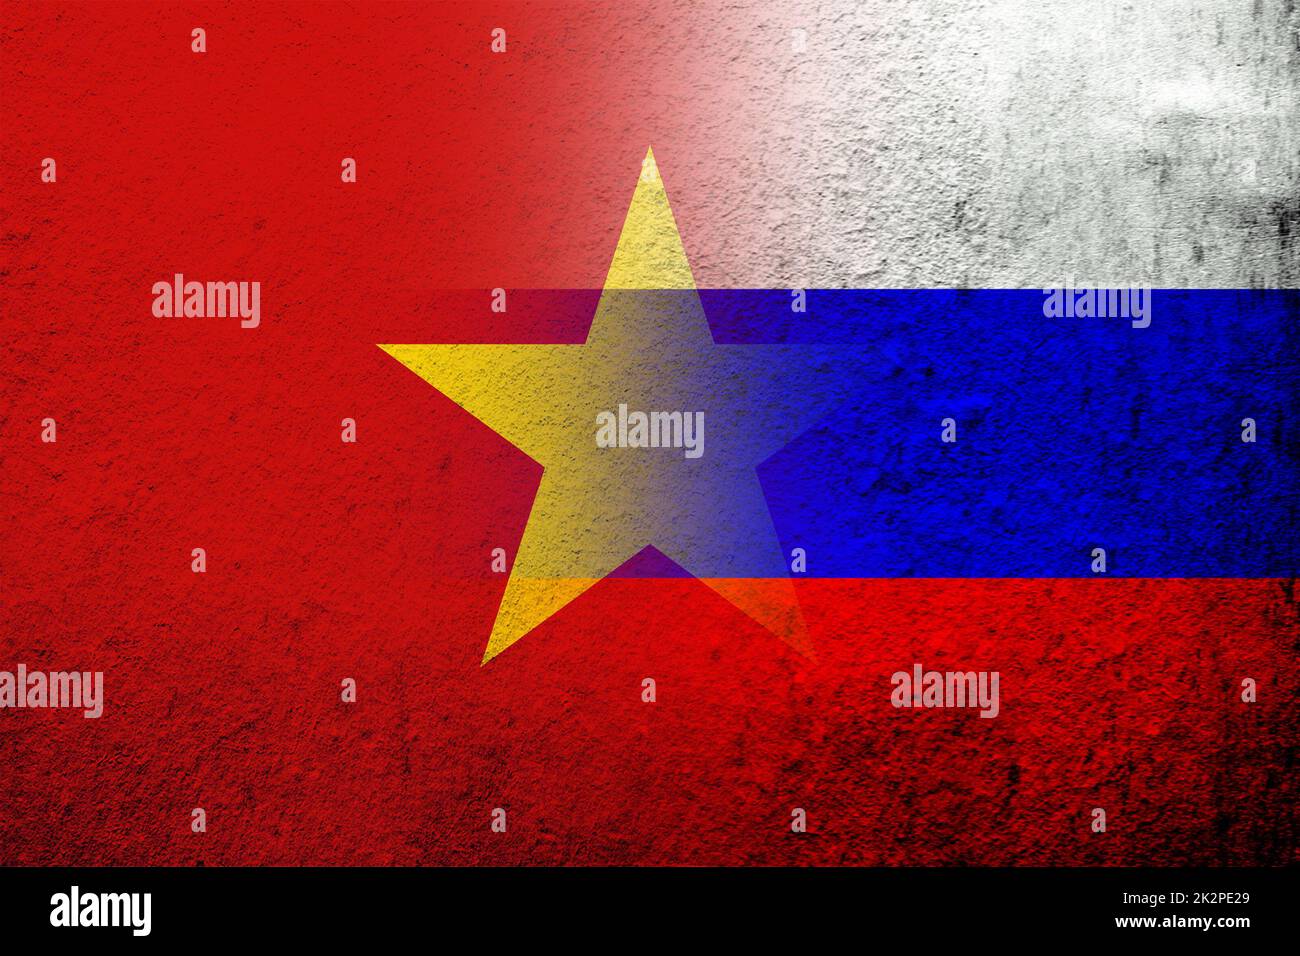 Drapeau national de la Fédération de Russie avec la République socialiste du Vietnam drapeau national. Grunge l'arrière-plan Banque D'Images